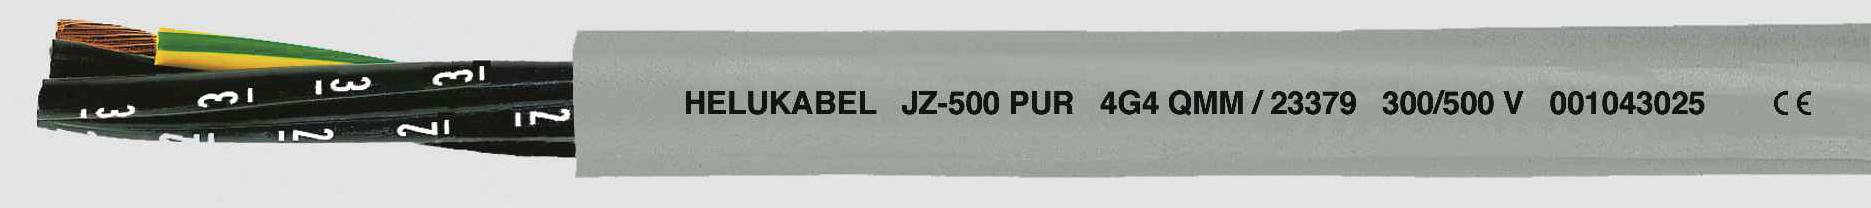 HELUKABEL JZ-500 PUR Steuerleitung 3 G 0.50 mm² Grau 23315-500 500 m